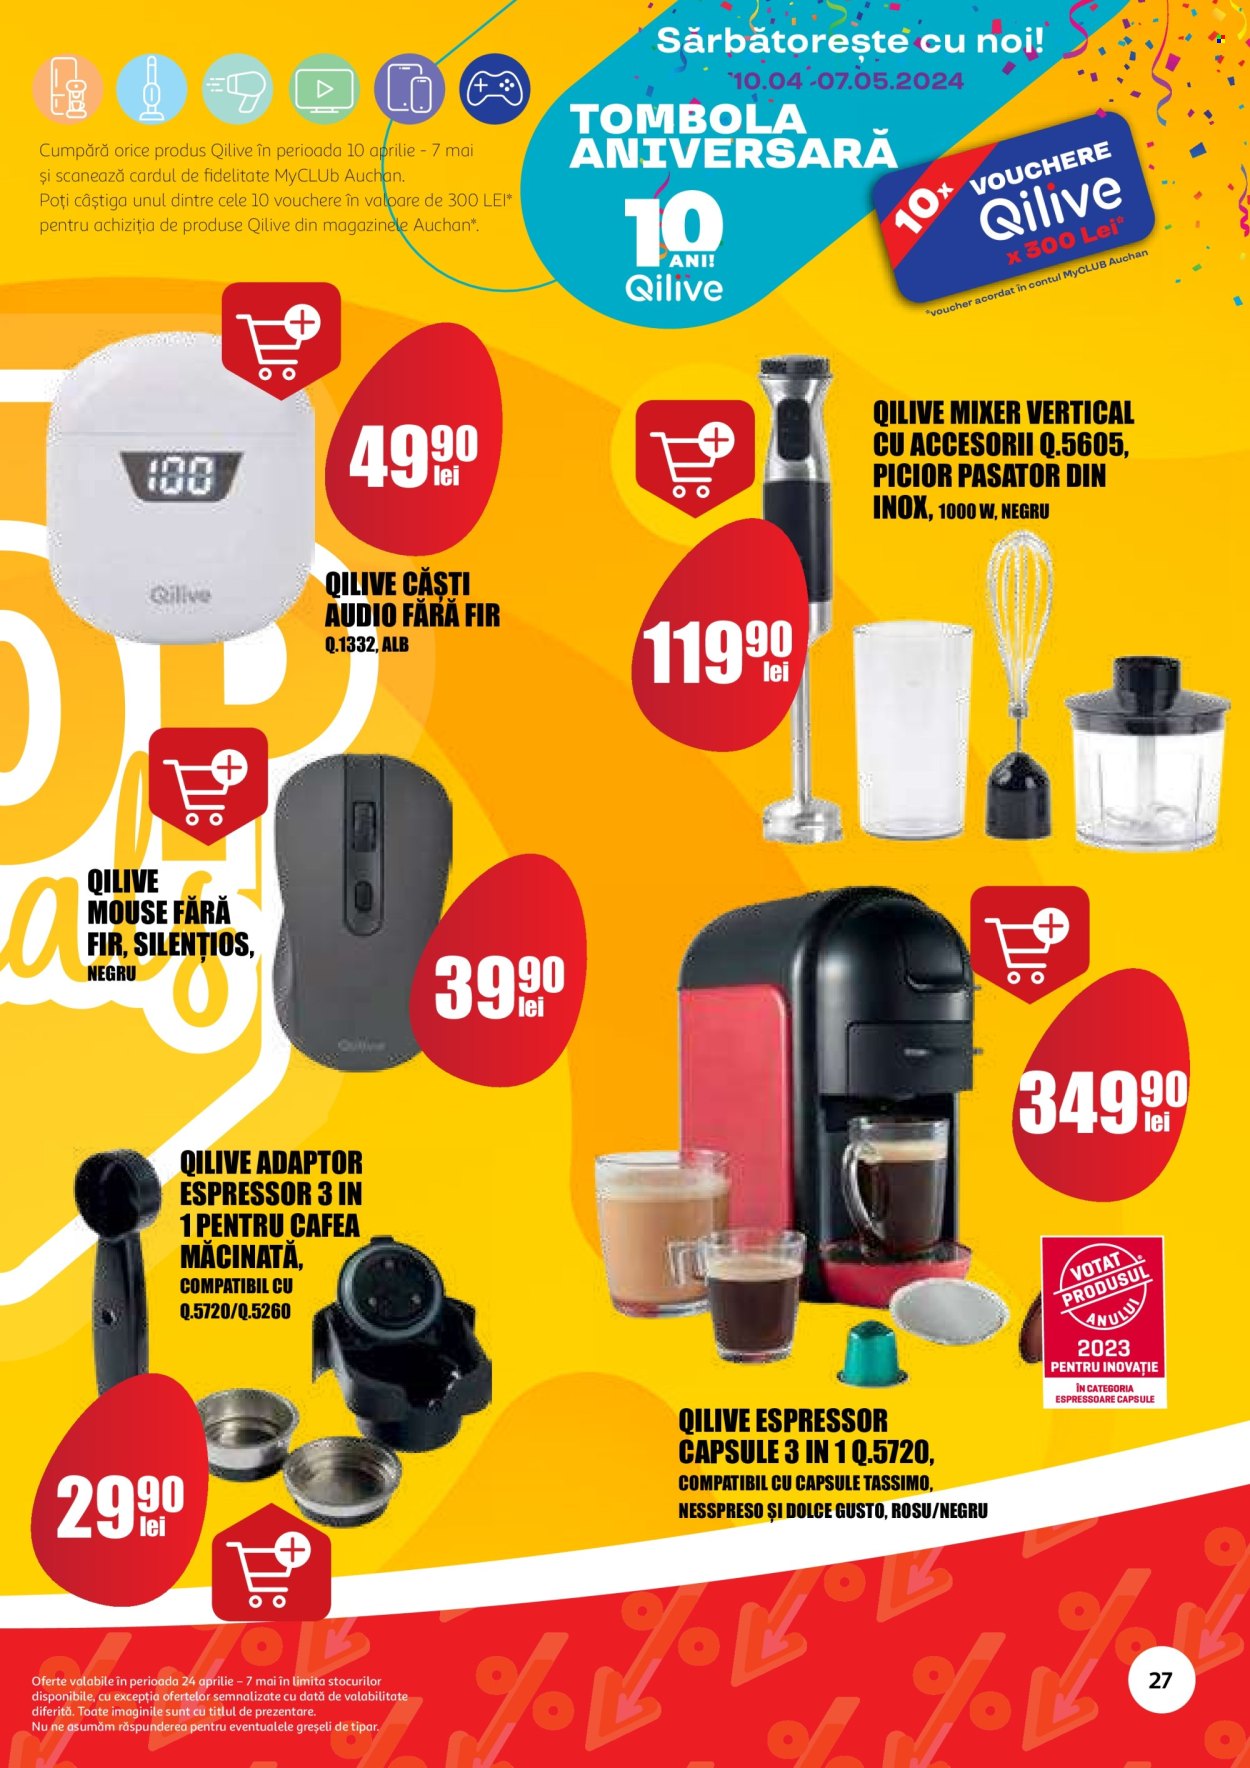 thumbnail - Cataloage Auchan - 24.04.2024 - 07.05.2024 - Produse în vânzare - cafea măcinată, Tassimo, ustensile bucătărie, mouse, căşti, espressor, mixer de mana, mixer vertical. Pagina 27.